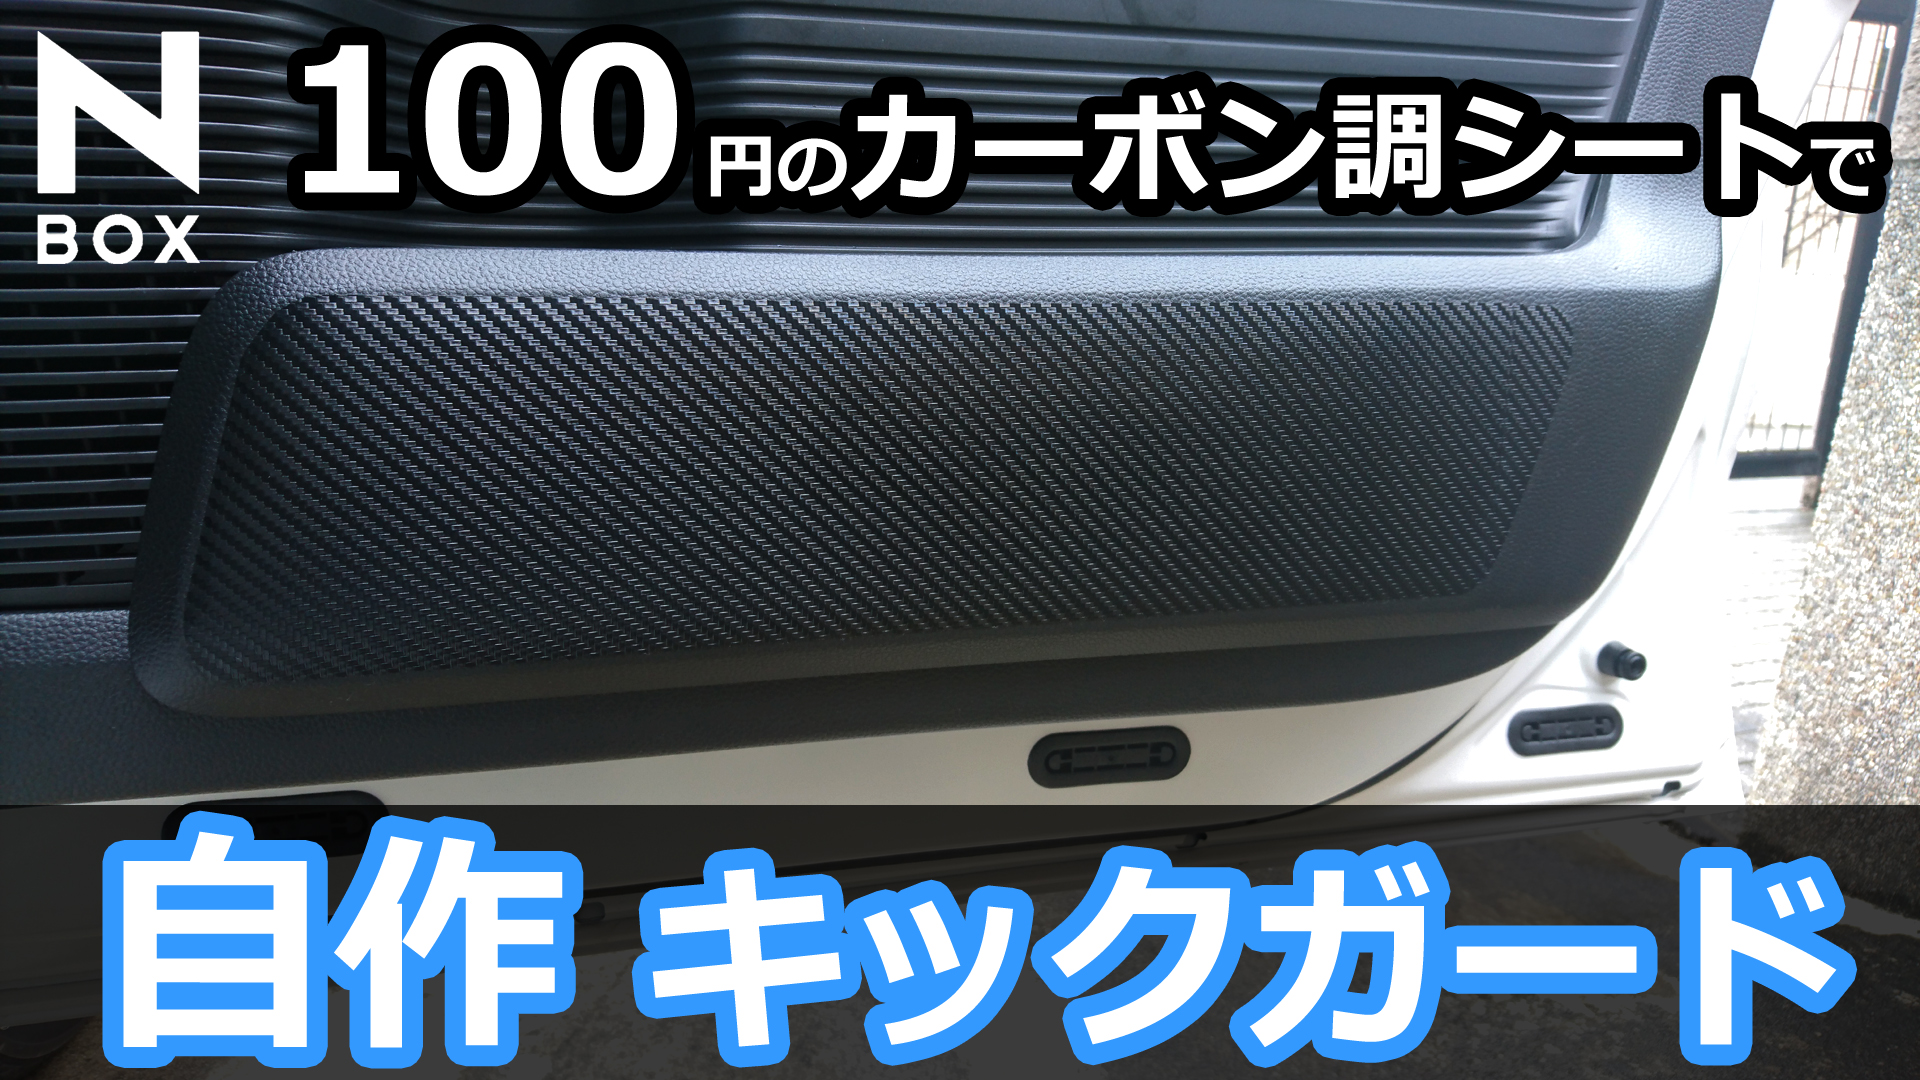 HONDA N-BOX 100円のカーボン調シートでドアキックガードを作ってみた！ | momotaro blog